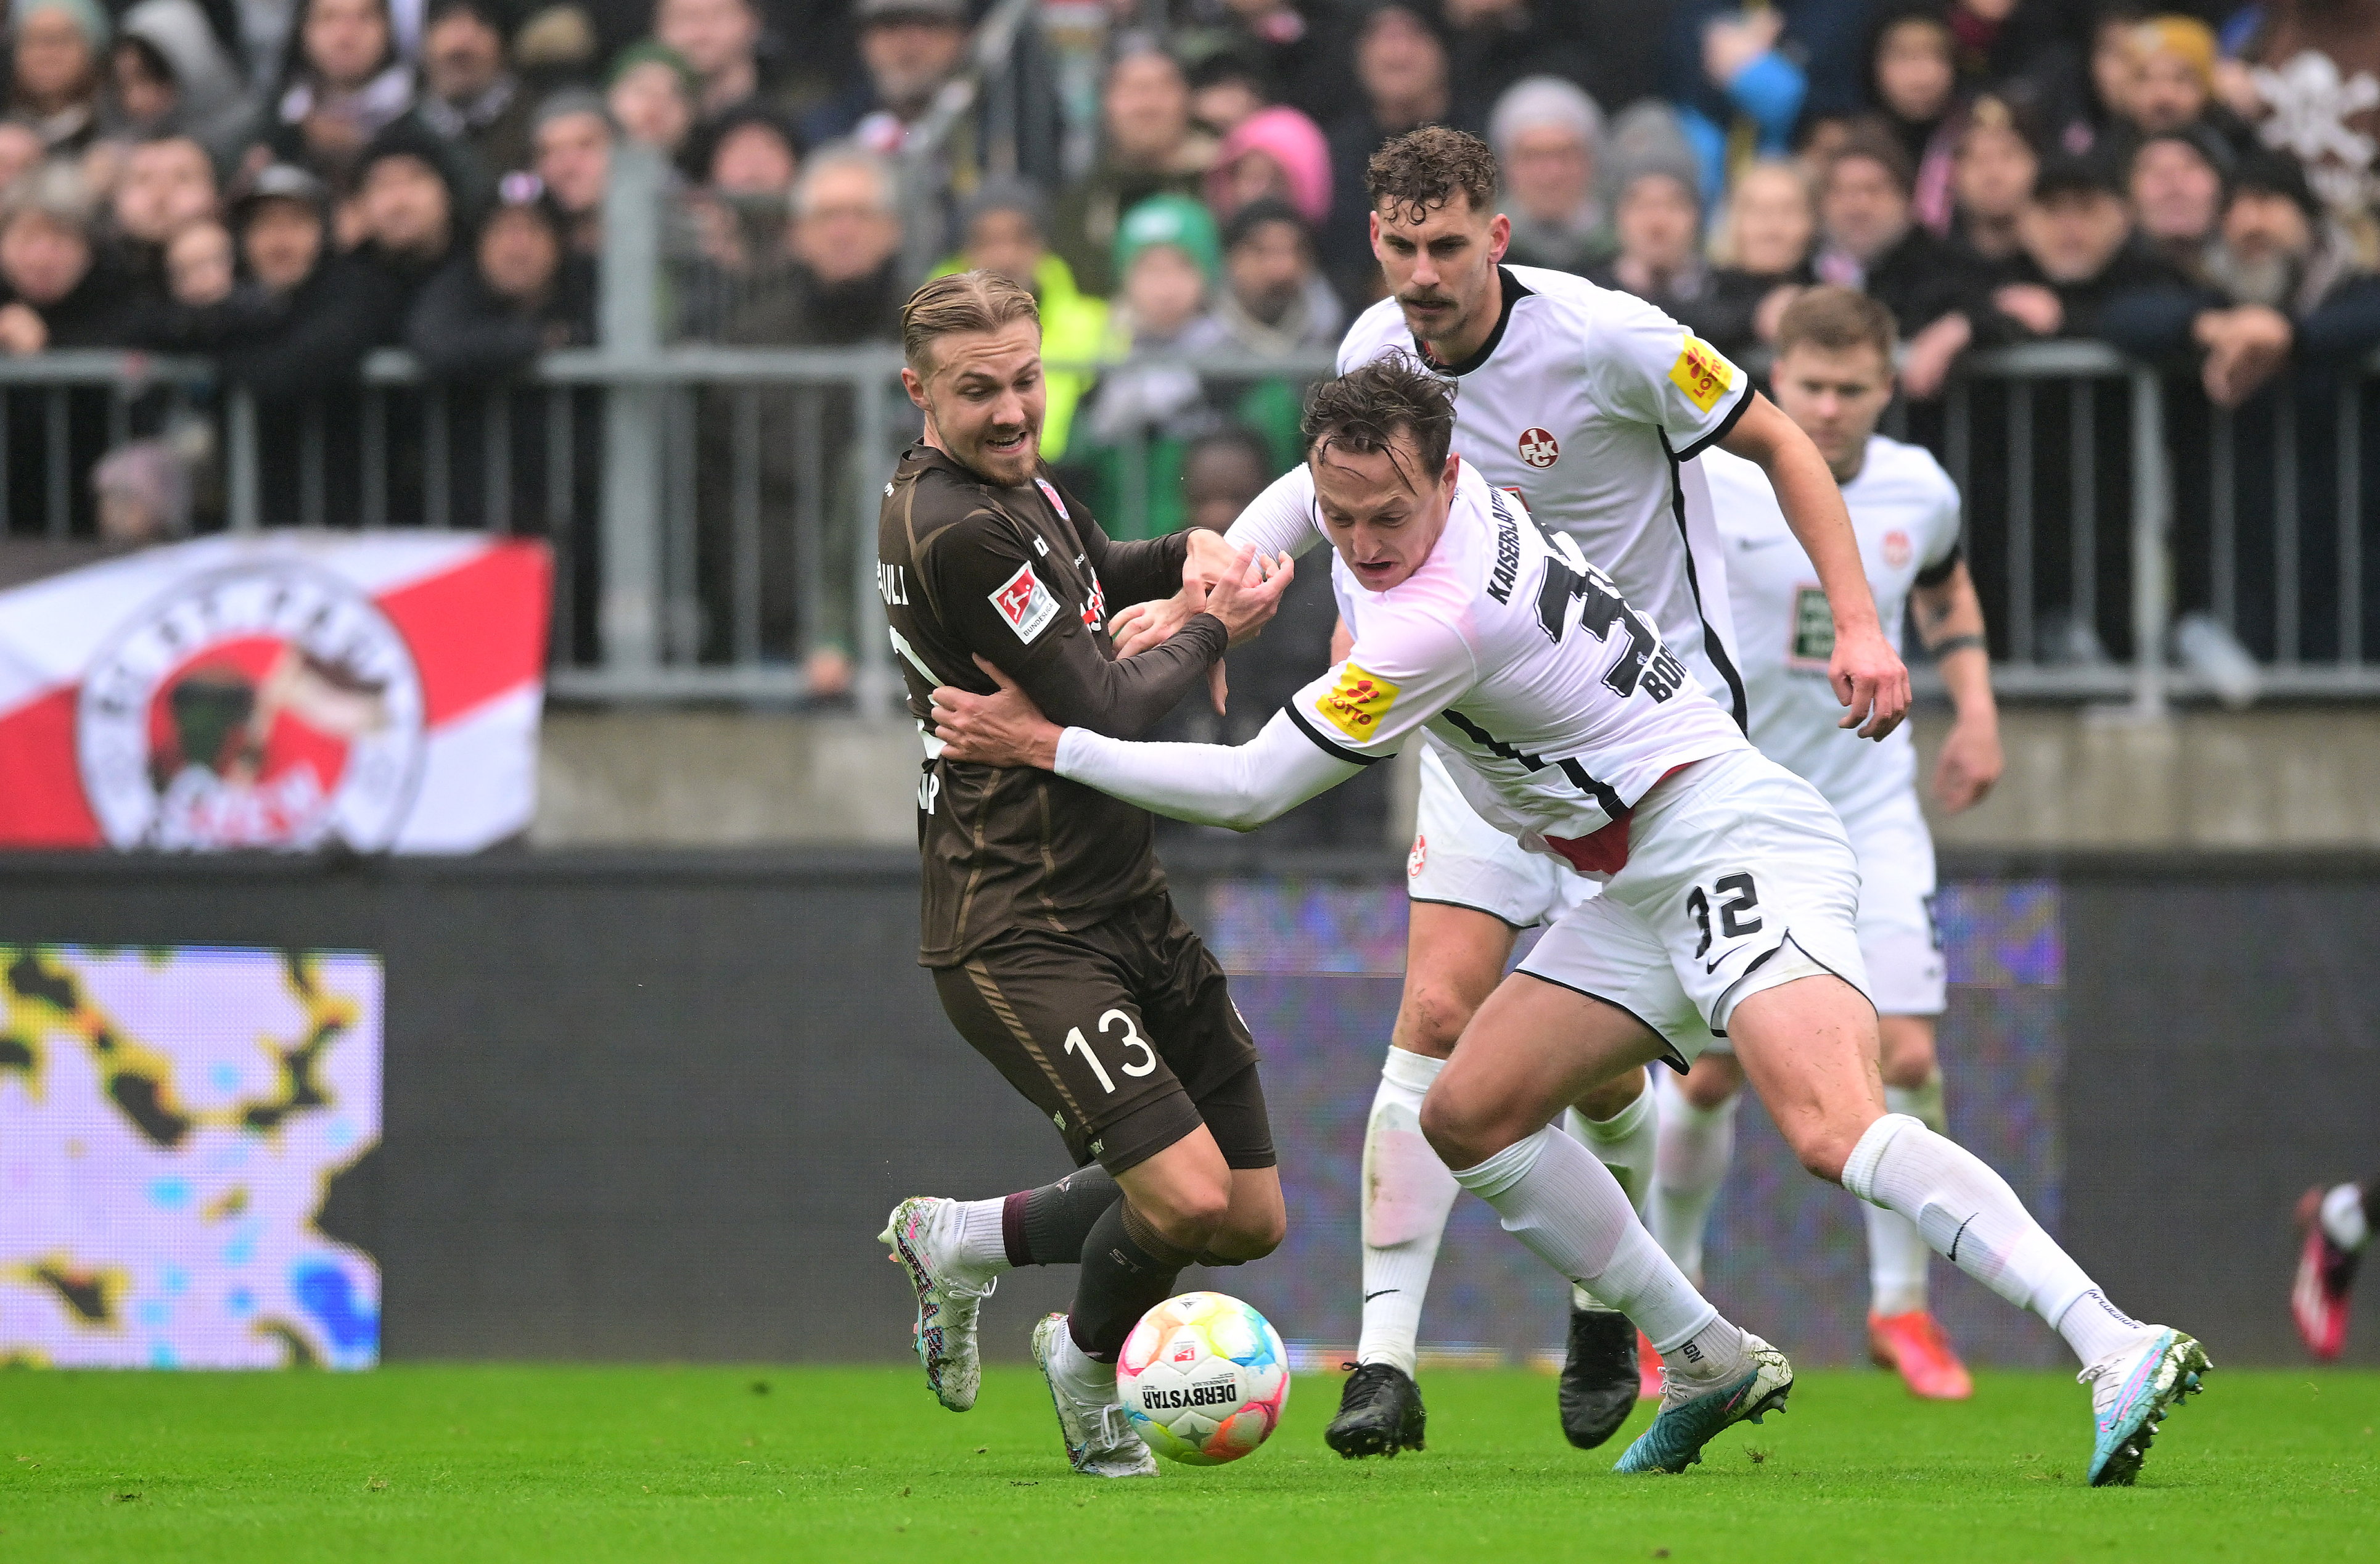 Lukas Daschner under challenge from three Kaiserslautern players.